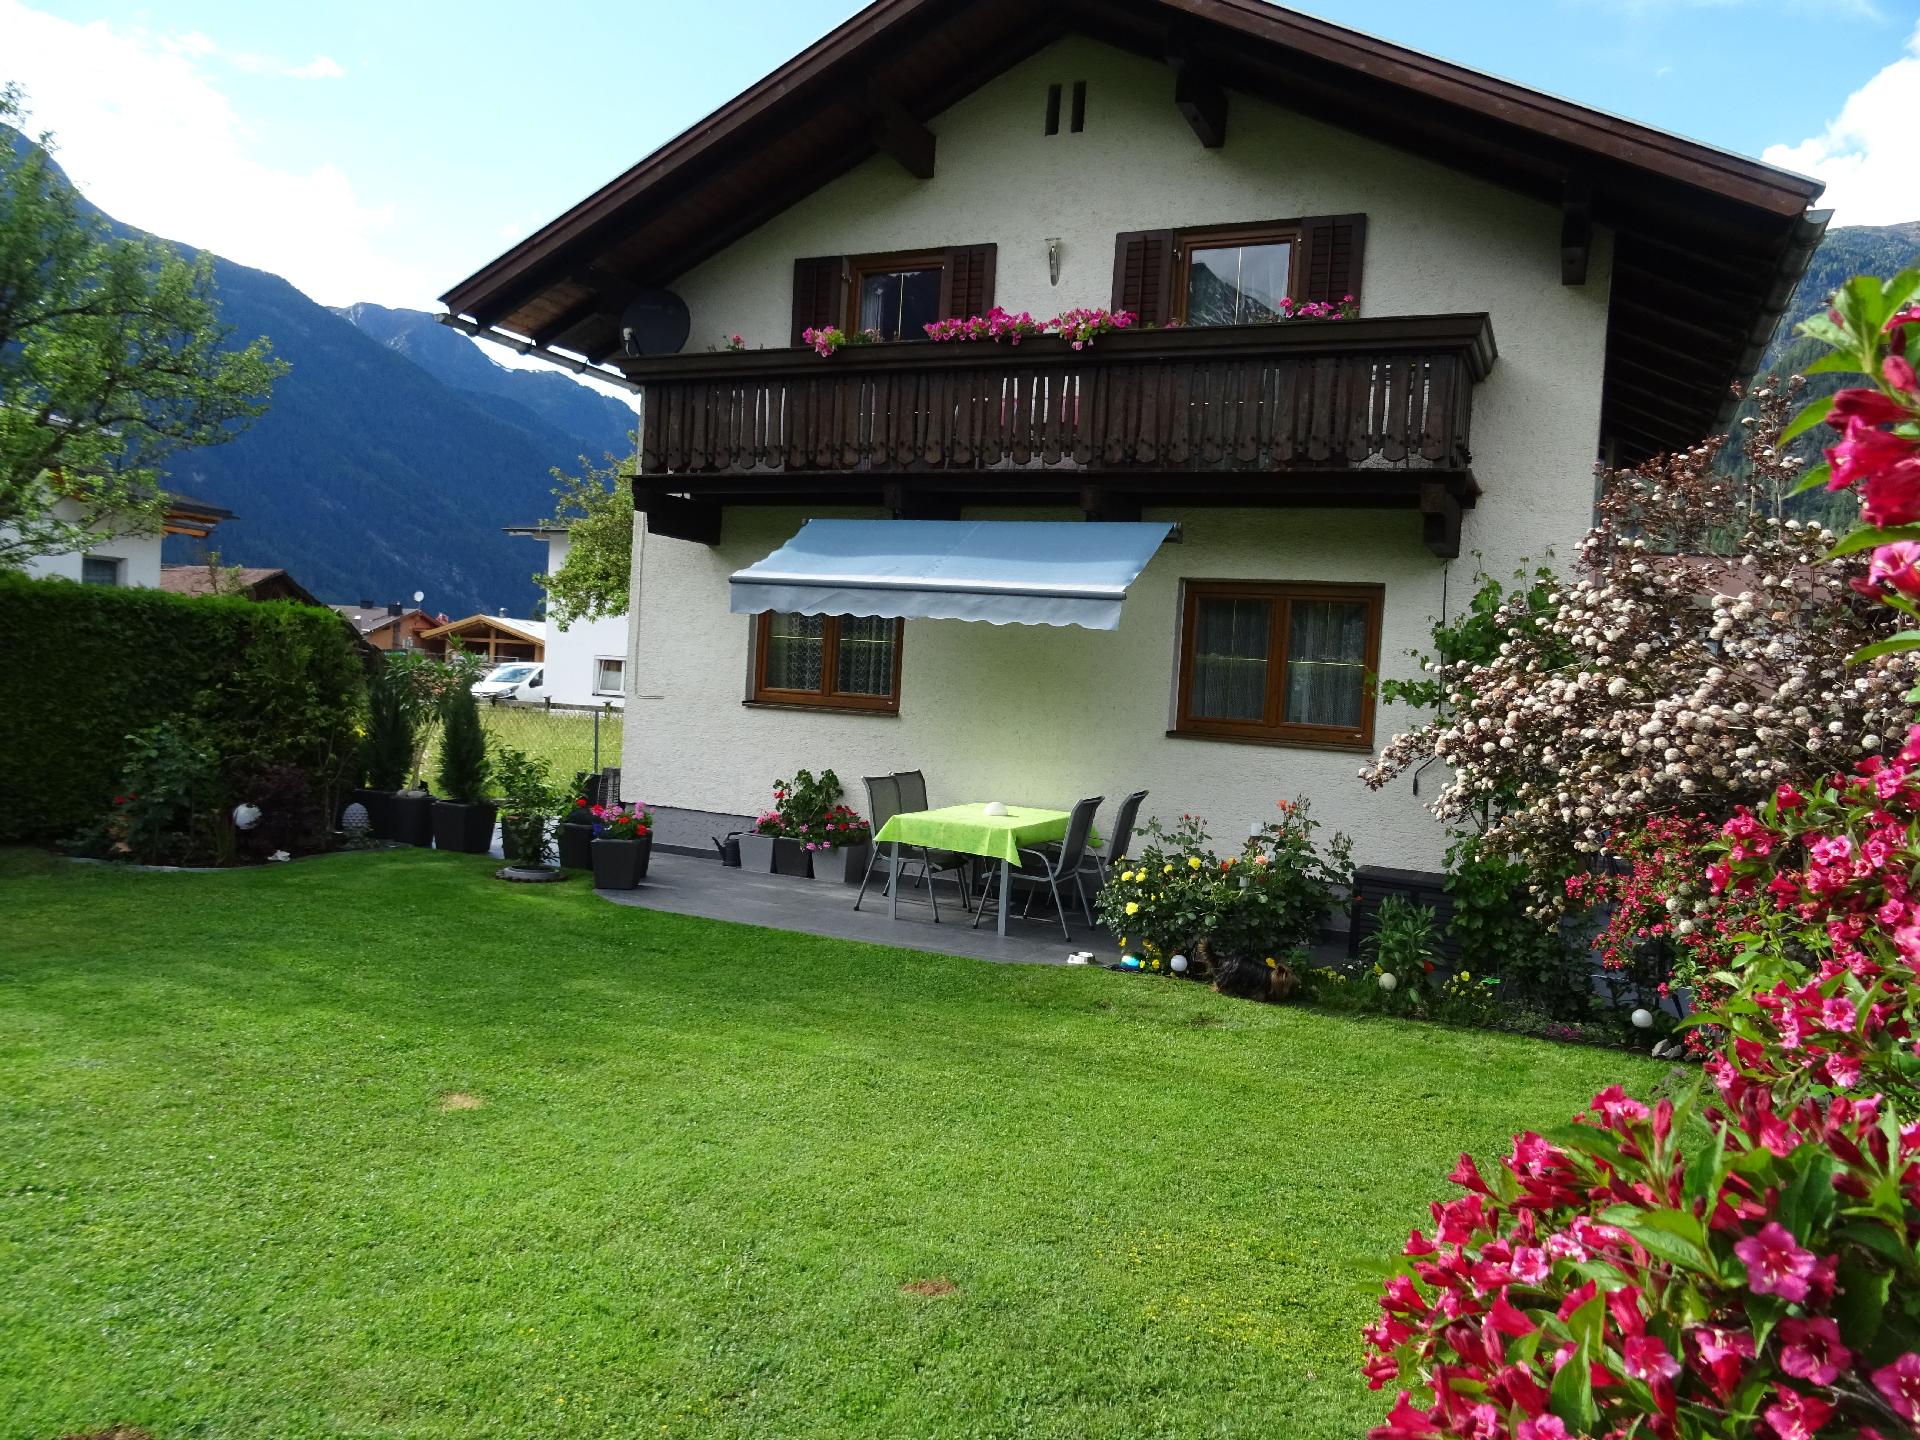 Ferienhaus mit Süd-Balkon und Garten sowie Pa Ferienhaus in Österreich